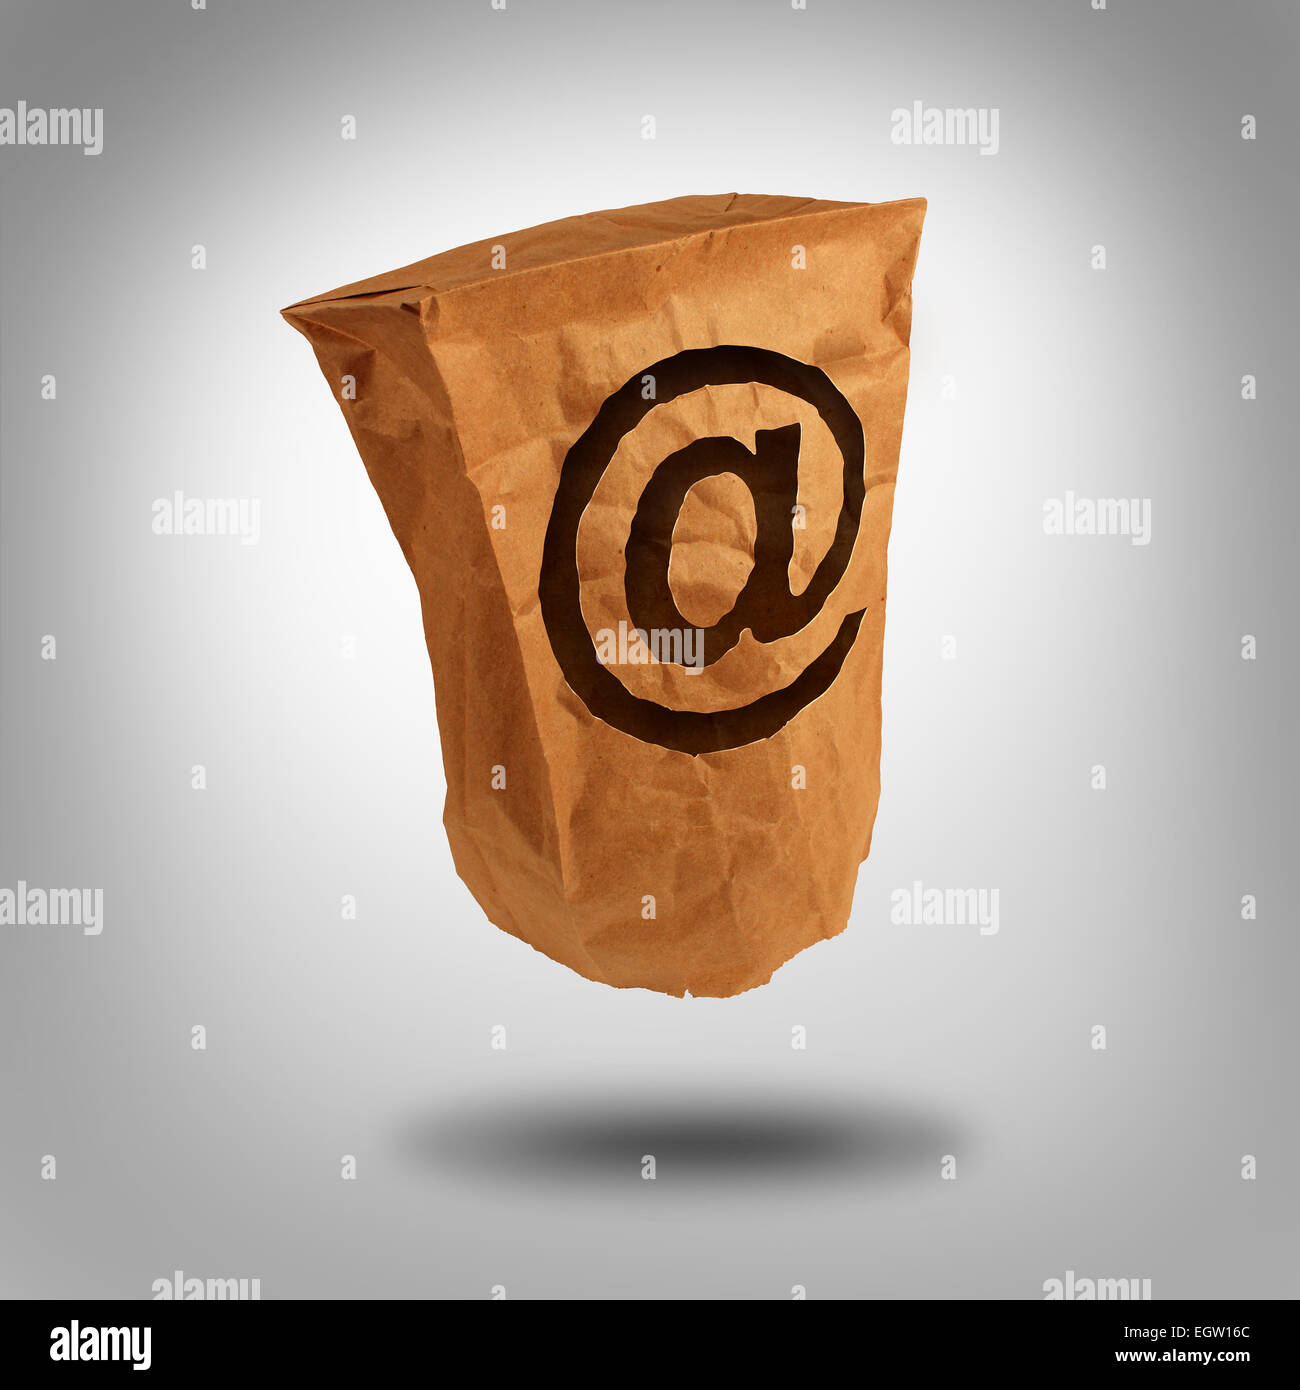 L'identité numérique et d'une salle ou de l'utilisateur du réseau social anonyme sur l'internet comme un sac en papier brun avec un trou en forme de symbole de l'e-mail avec une esperluette icône. Banque D'Images